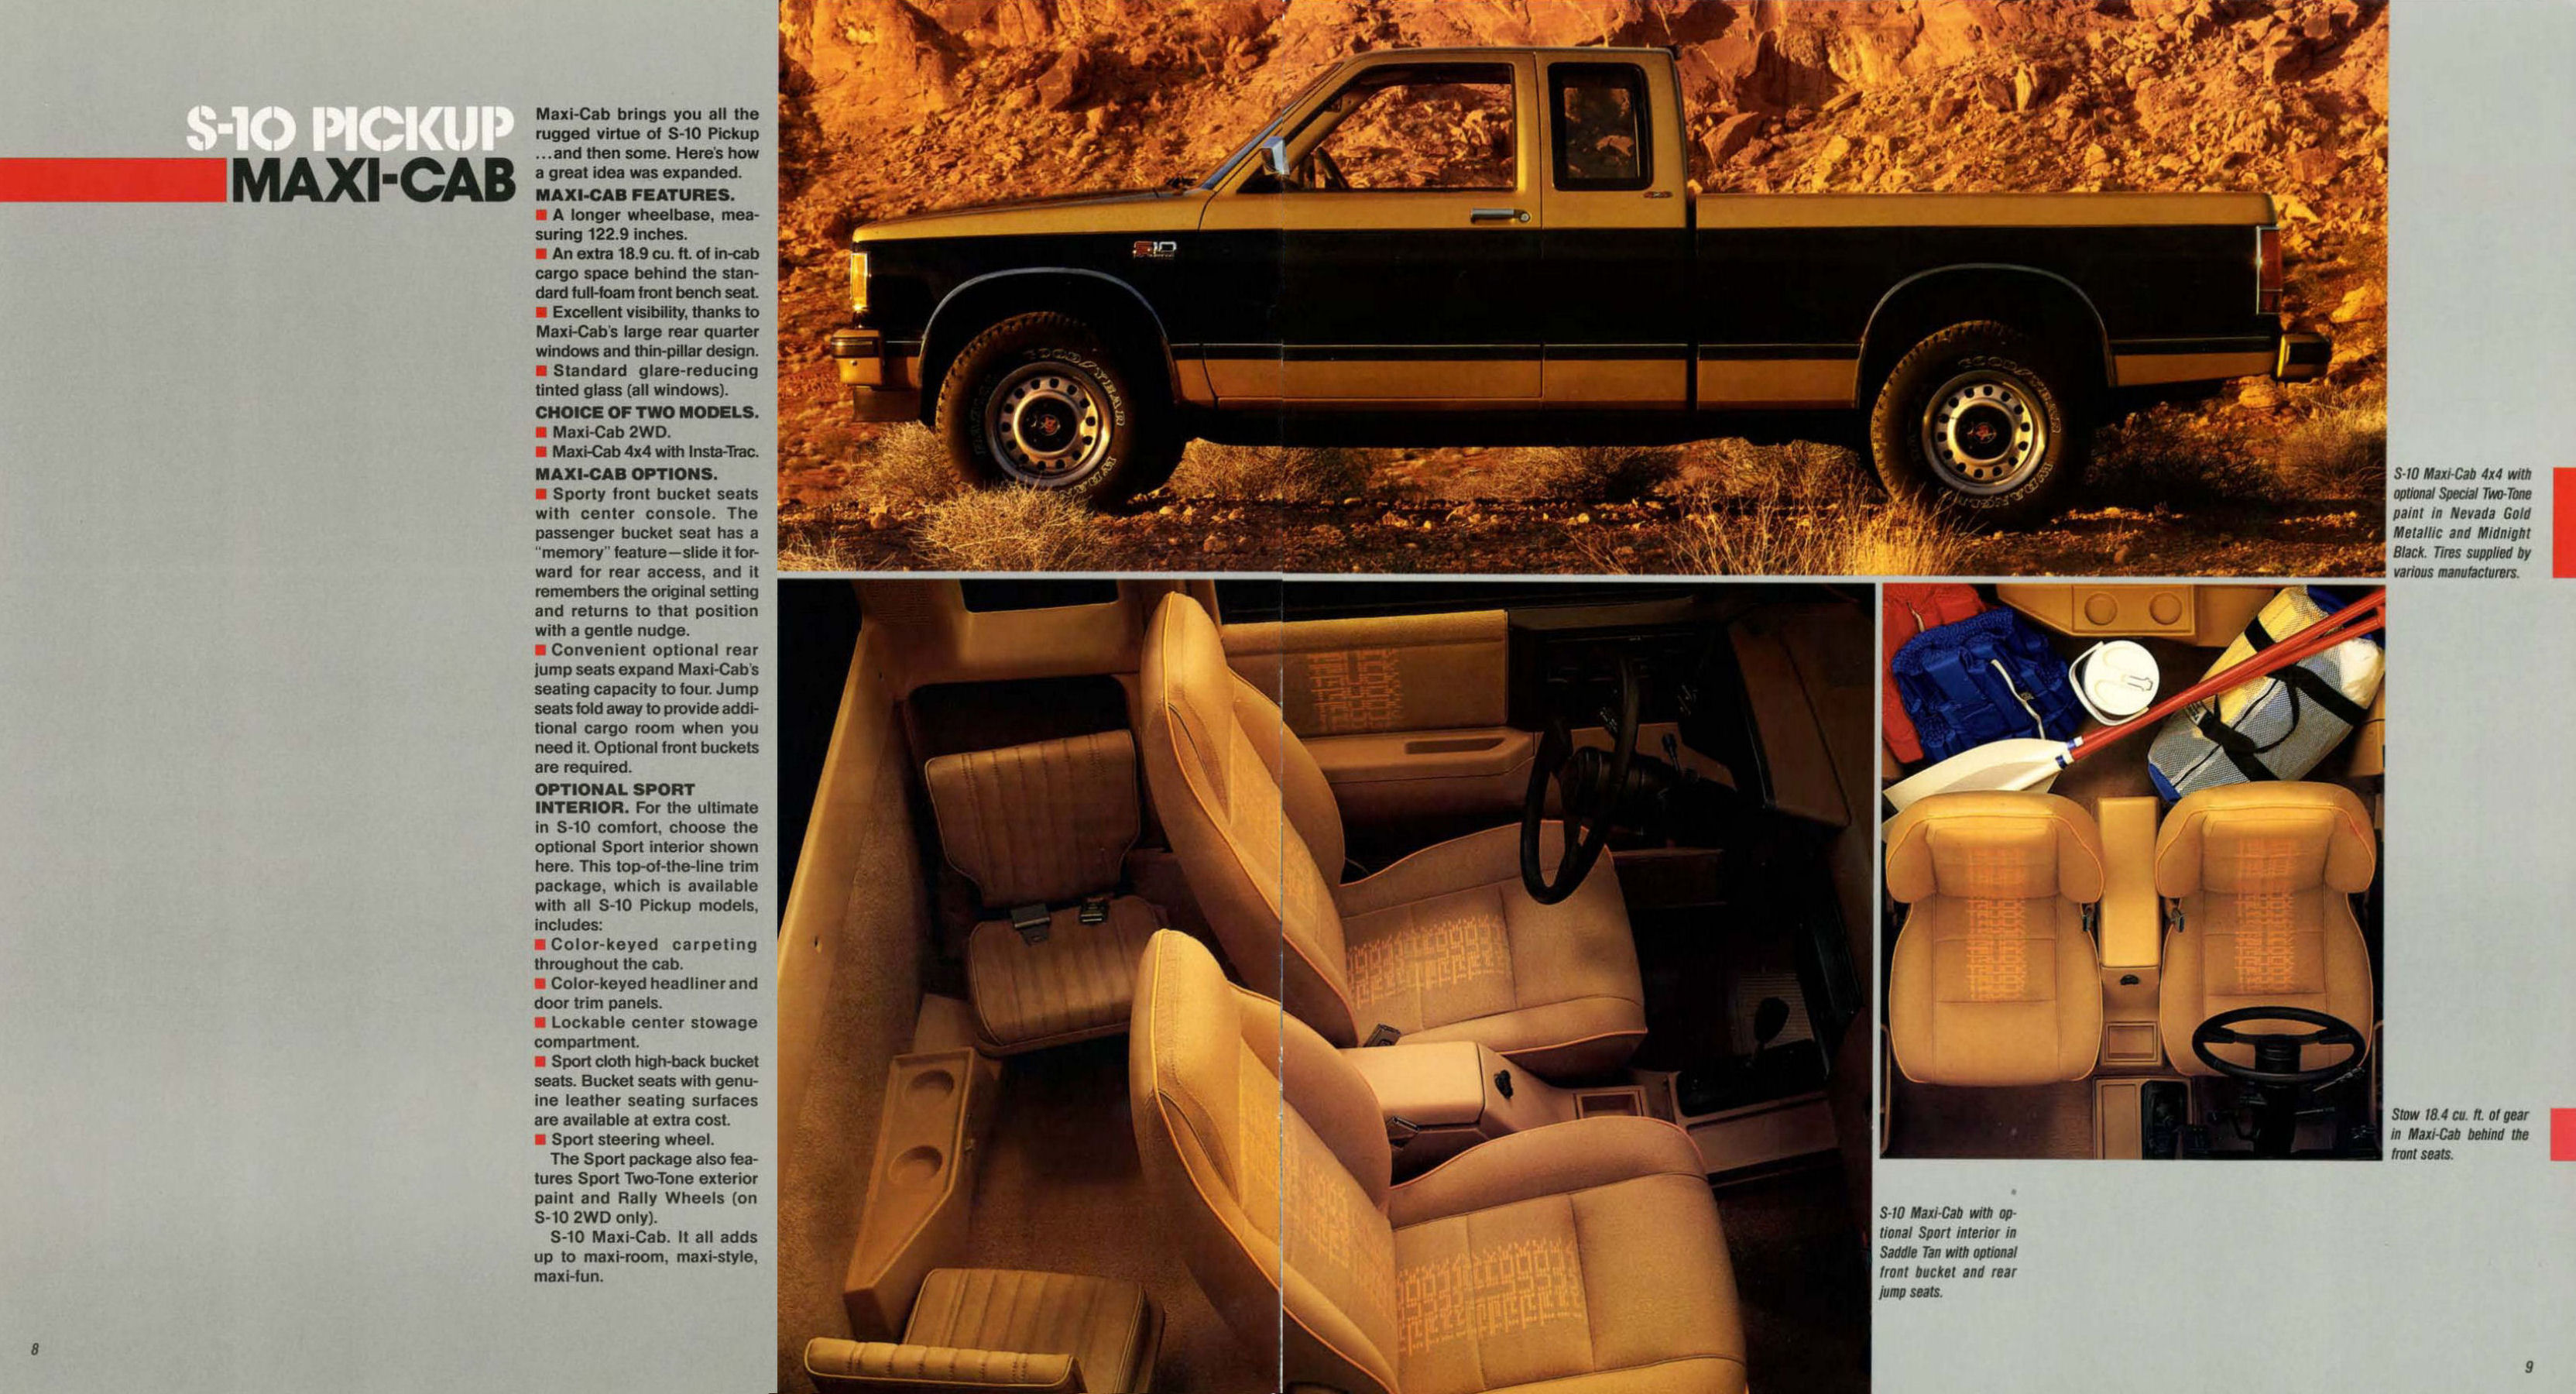 1987 Chevrolet S-10 Pickup-08-09